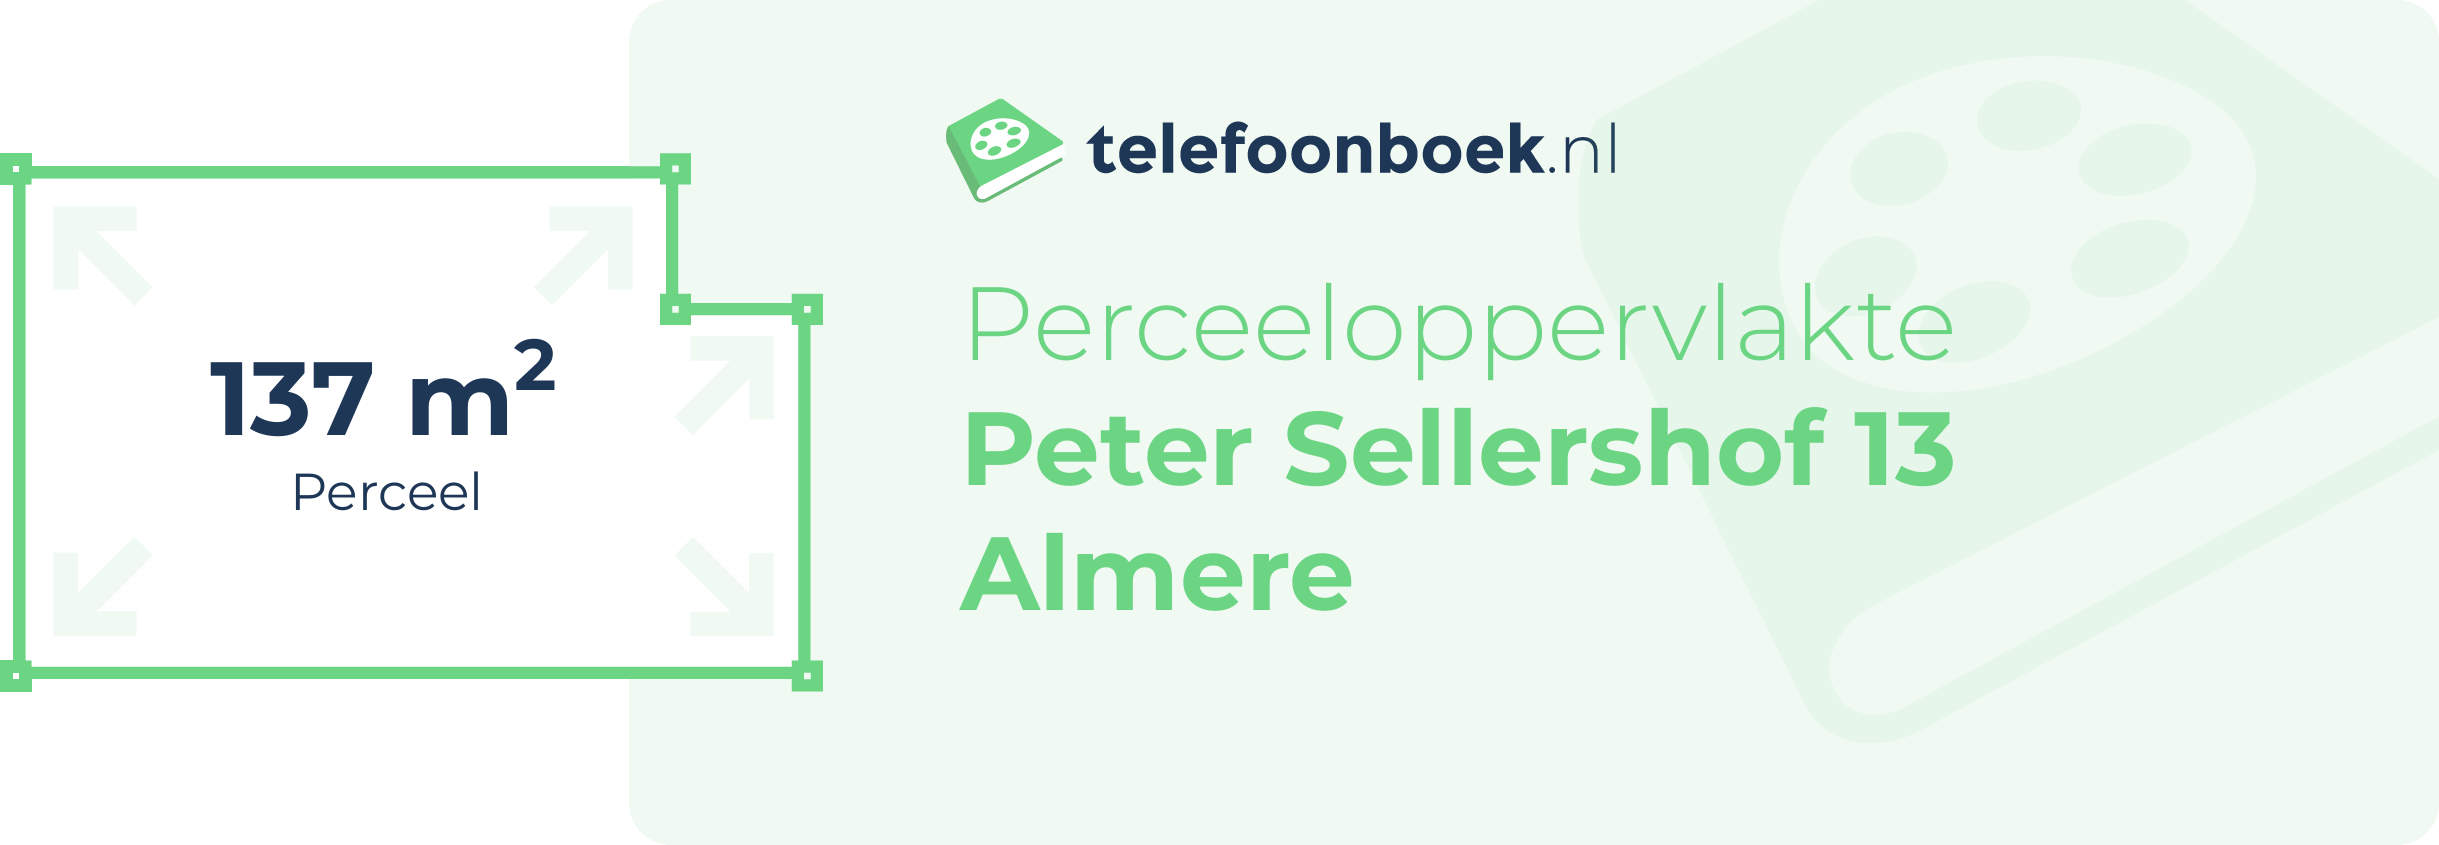 Perceeloppervlakte Peter Sellershof 13 Almere